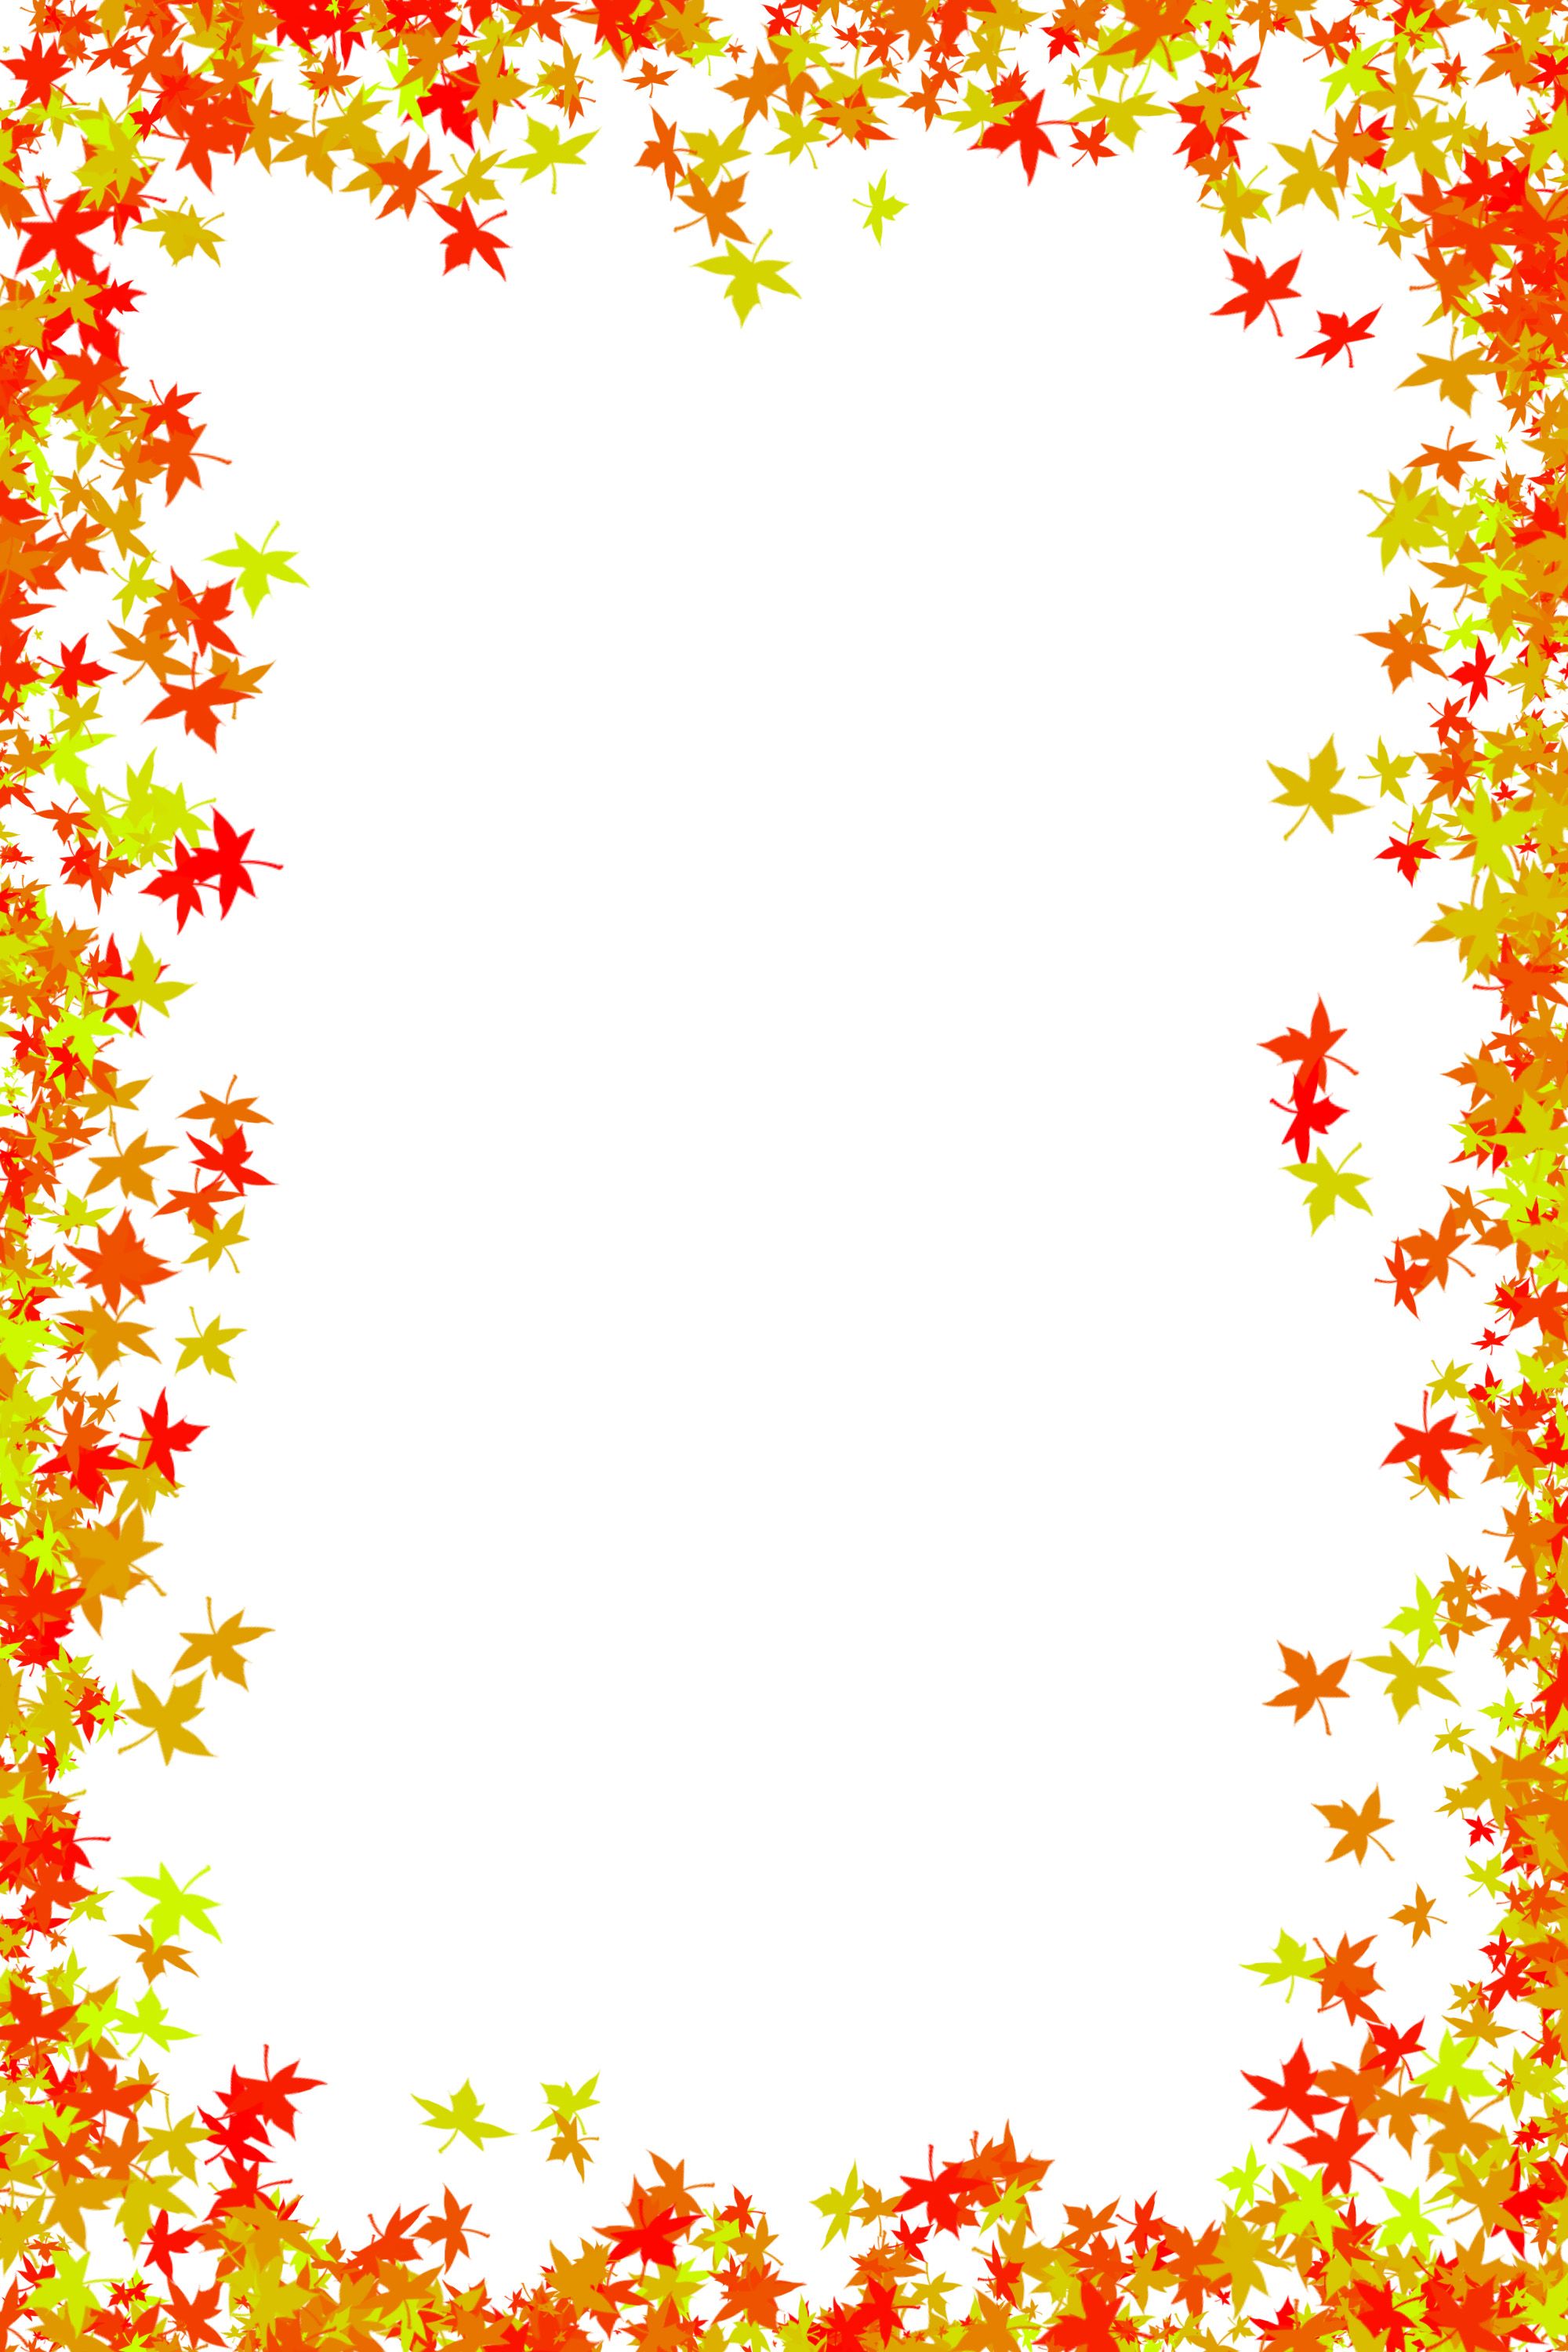 free-photo-autumn-leaves-border-autumn-border-dry-free-download